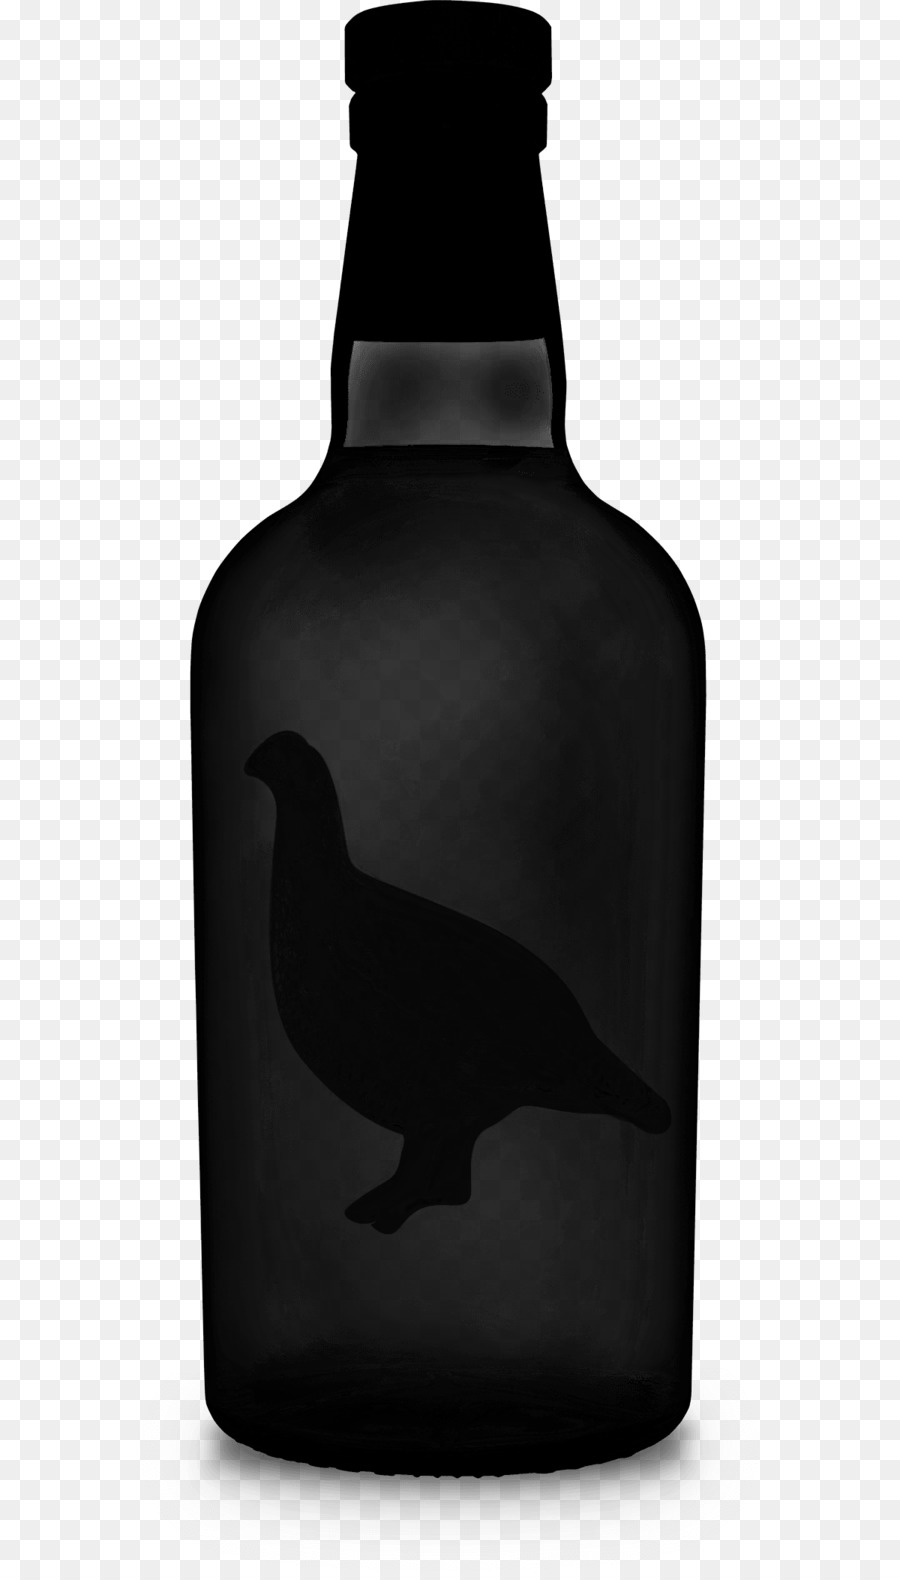 Glass bottle Wine Beer bottle -  png download - 1200*2094 - Free Transparent Glass Bottle png Download.